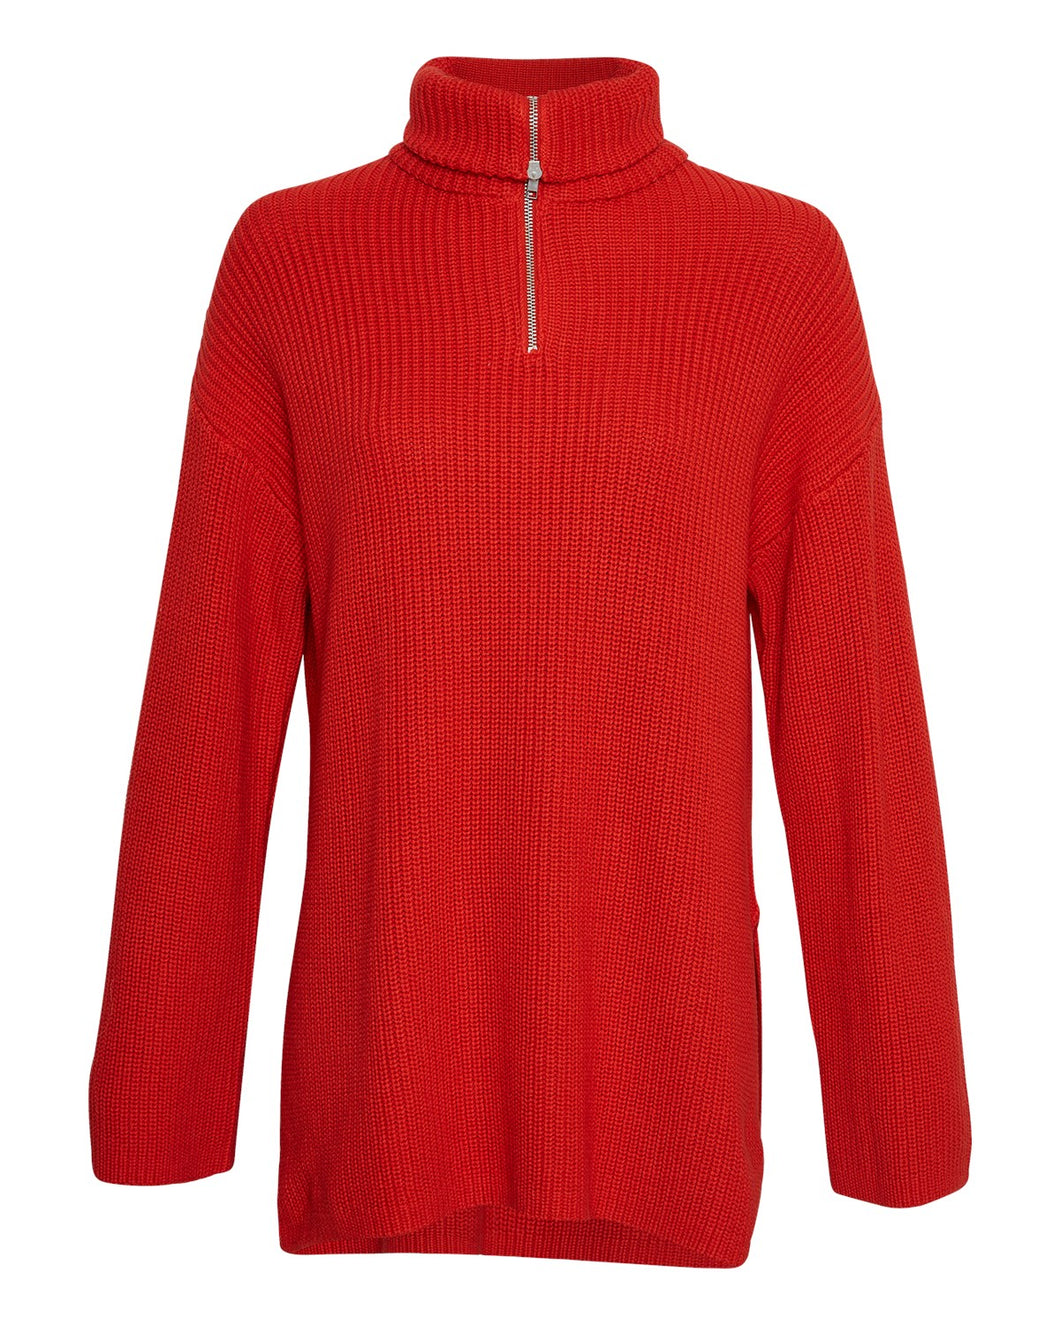 MSCHKamella Zip Pullover, aurora red